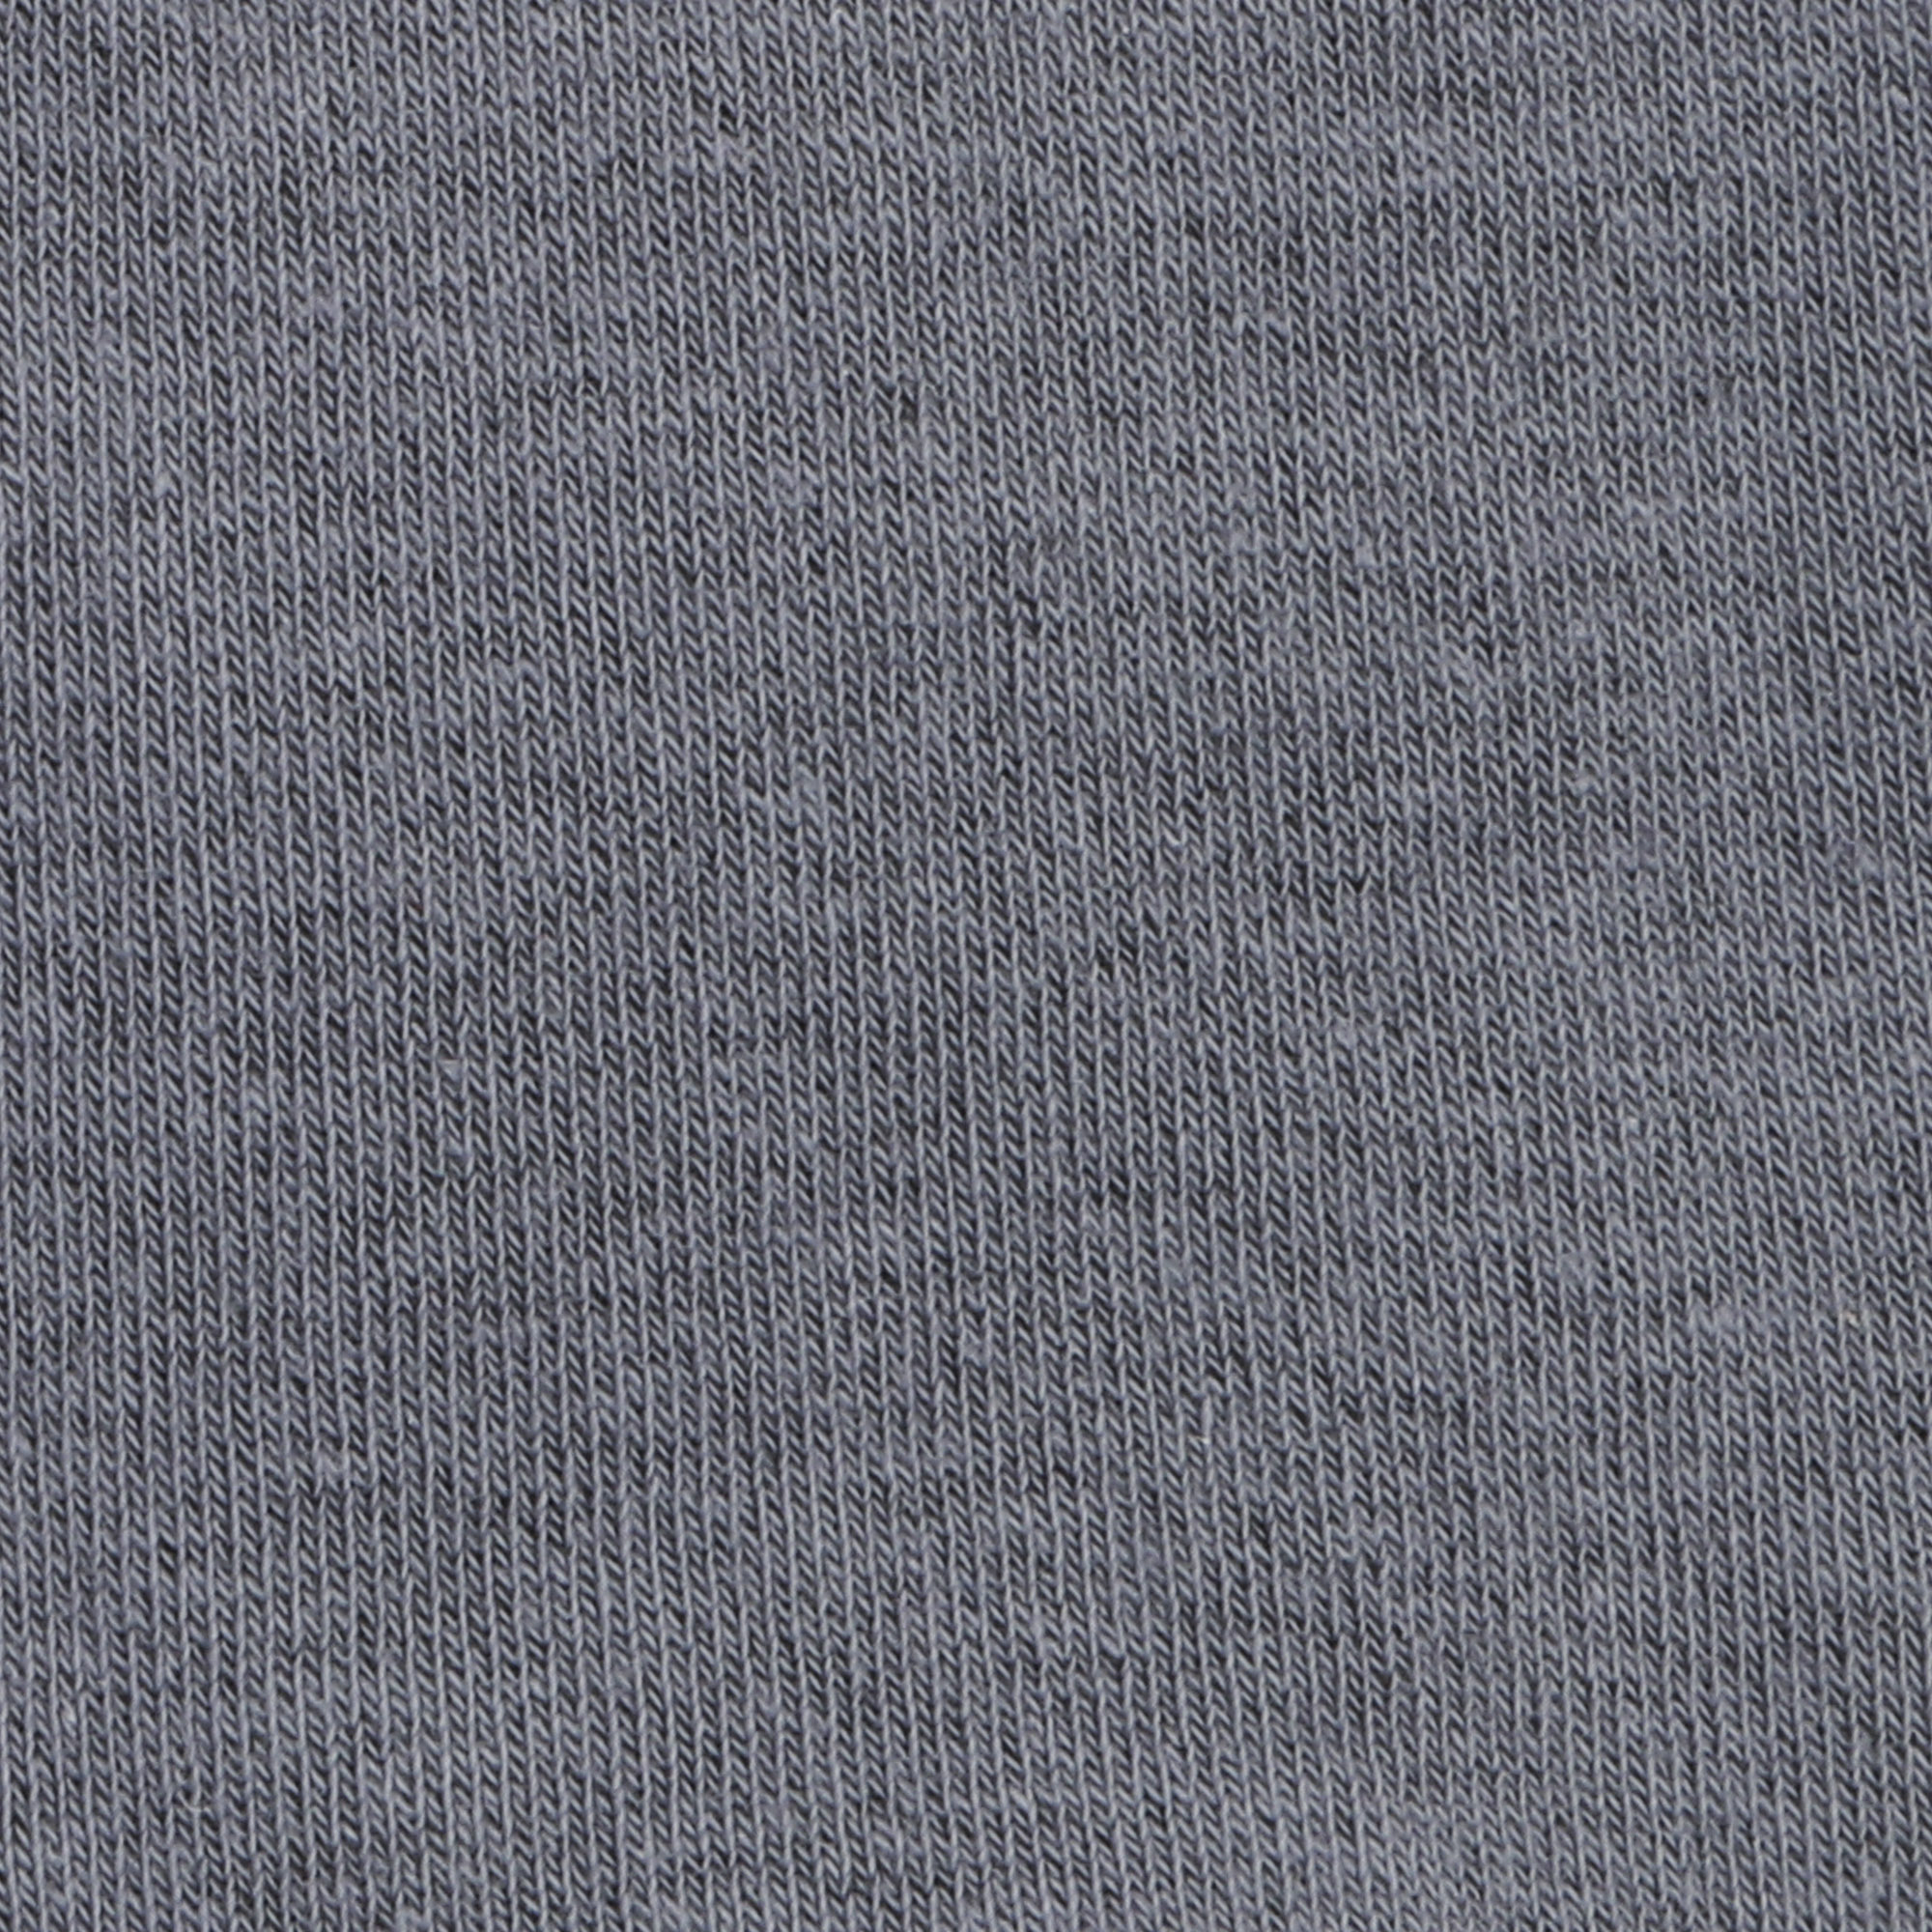 Носки мужские однотонные Lucky Socks НМГ-0053 серые  25-27, цвет серый, размер 25-27 - фото 2